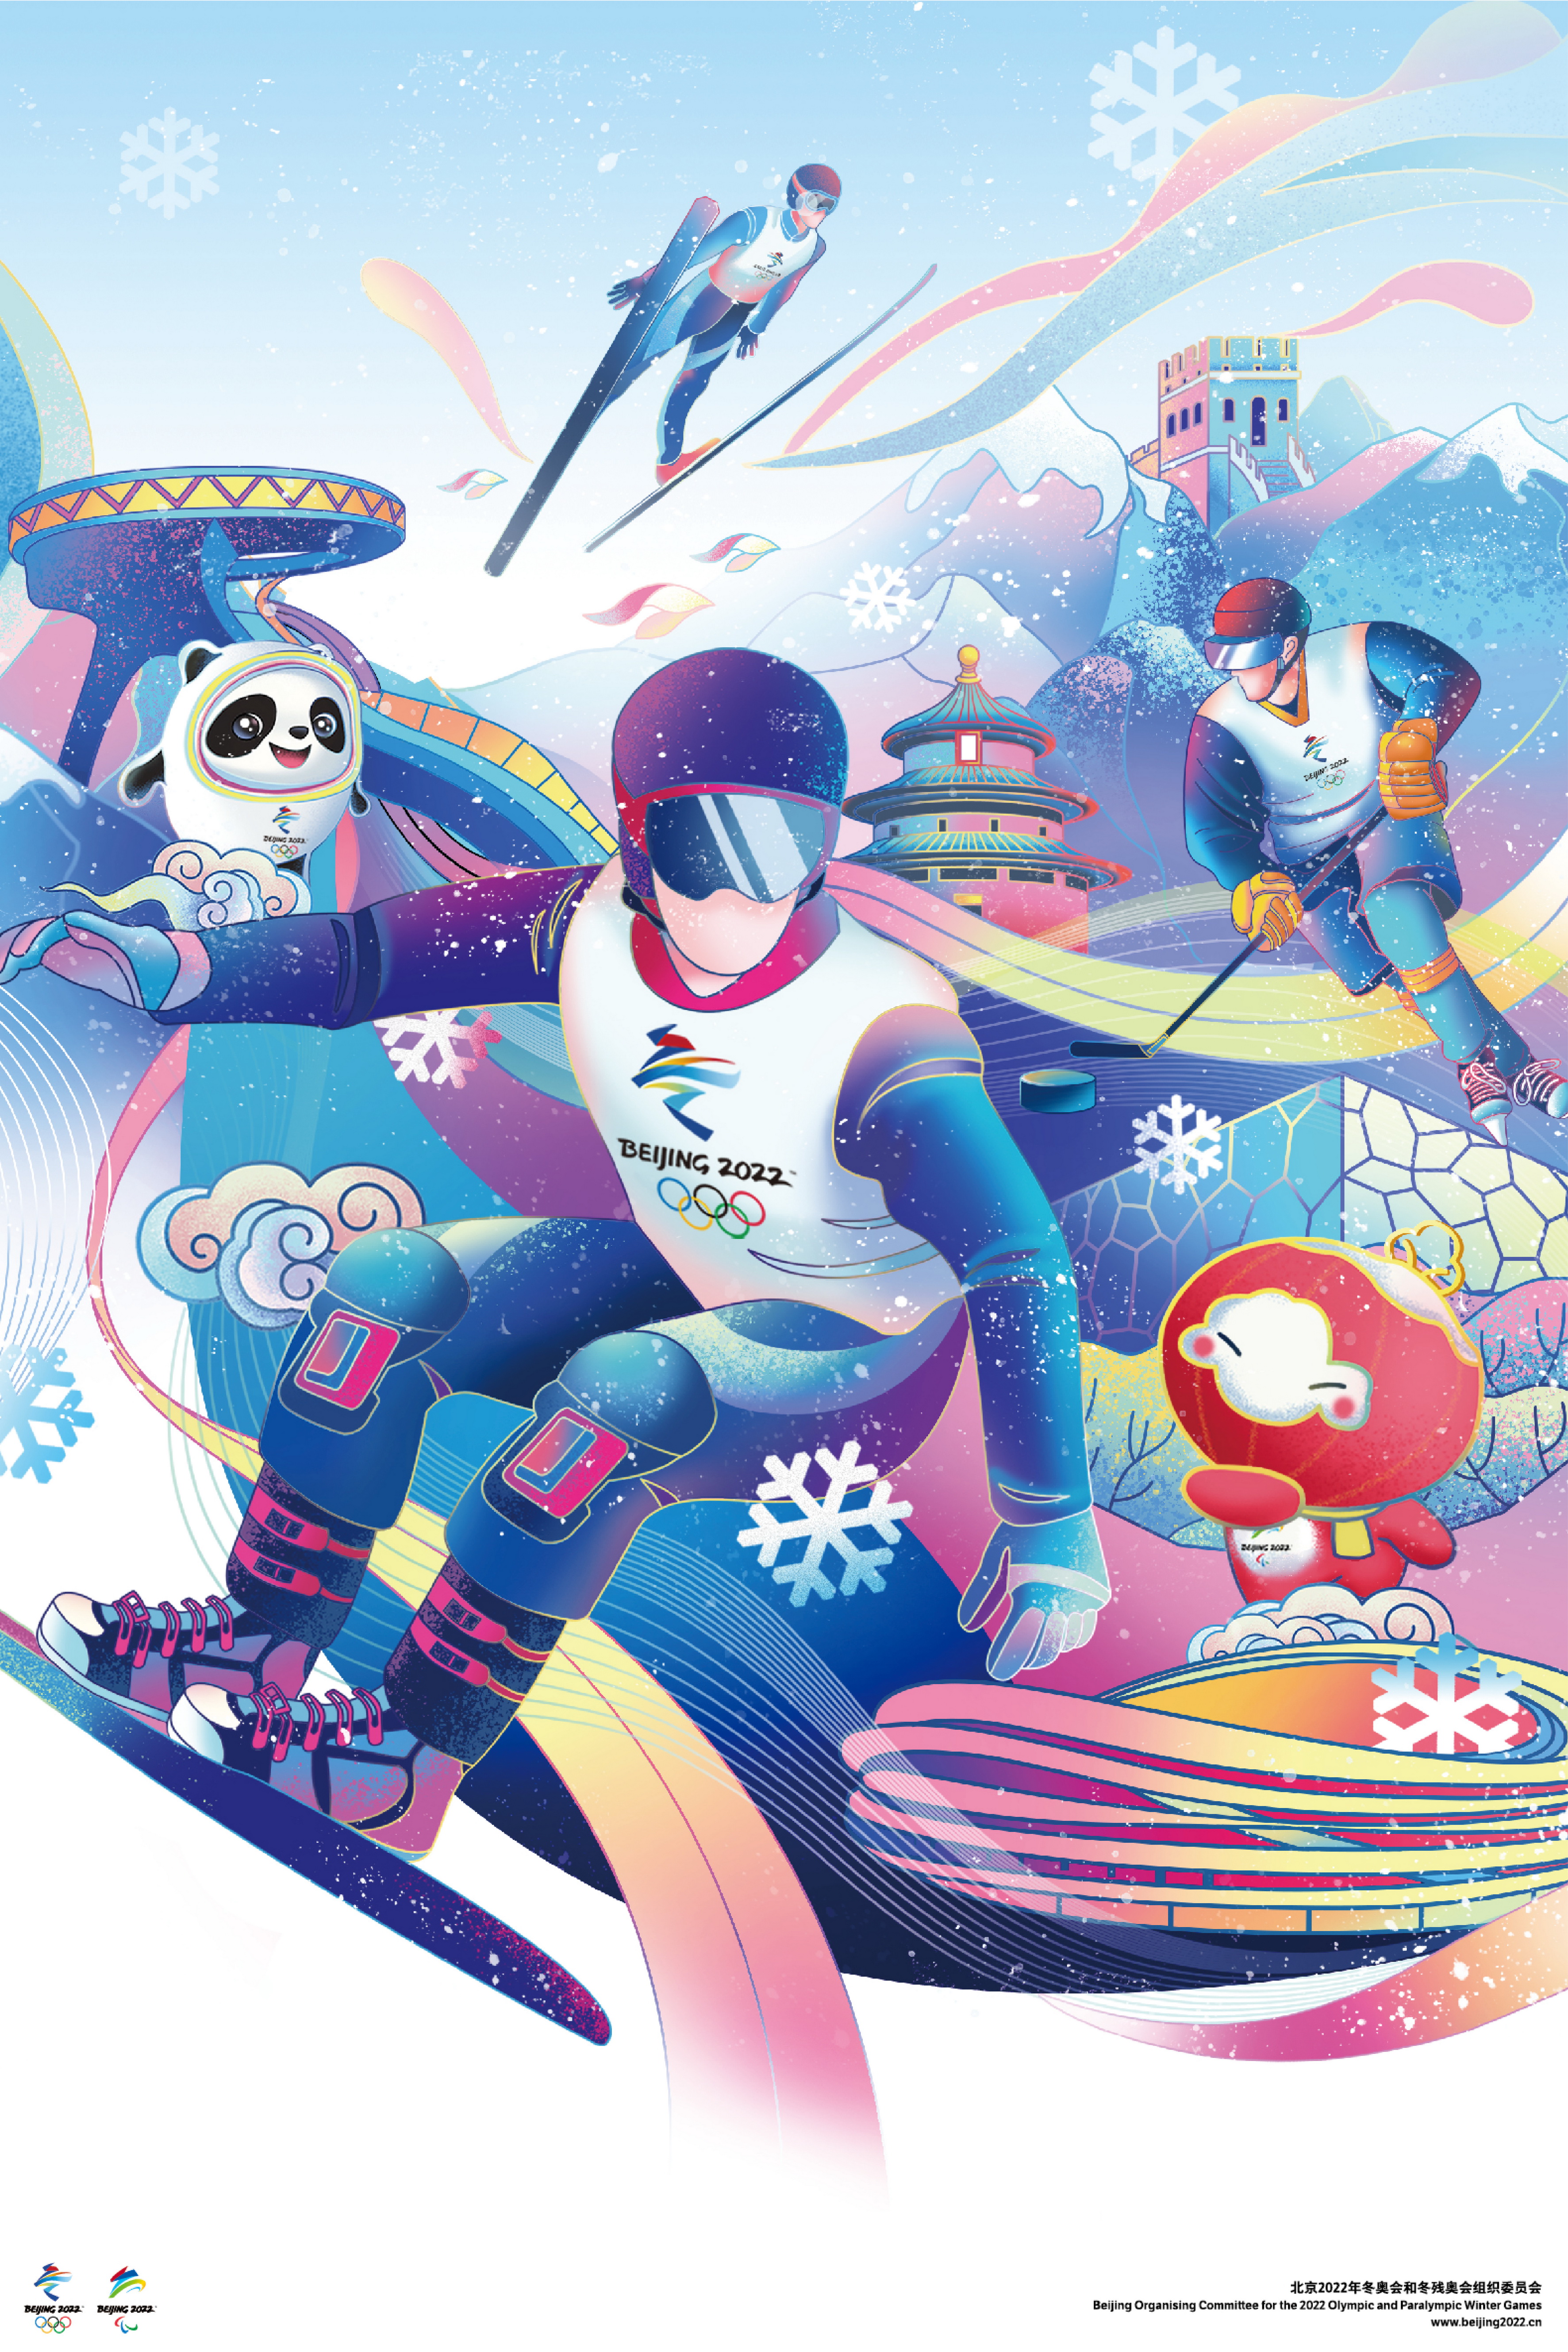 一睹为快!北京冬奥会和冬残奥会宣传海报正式发布